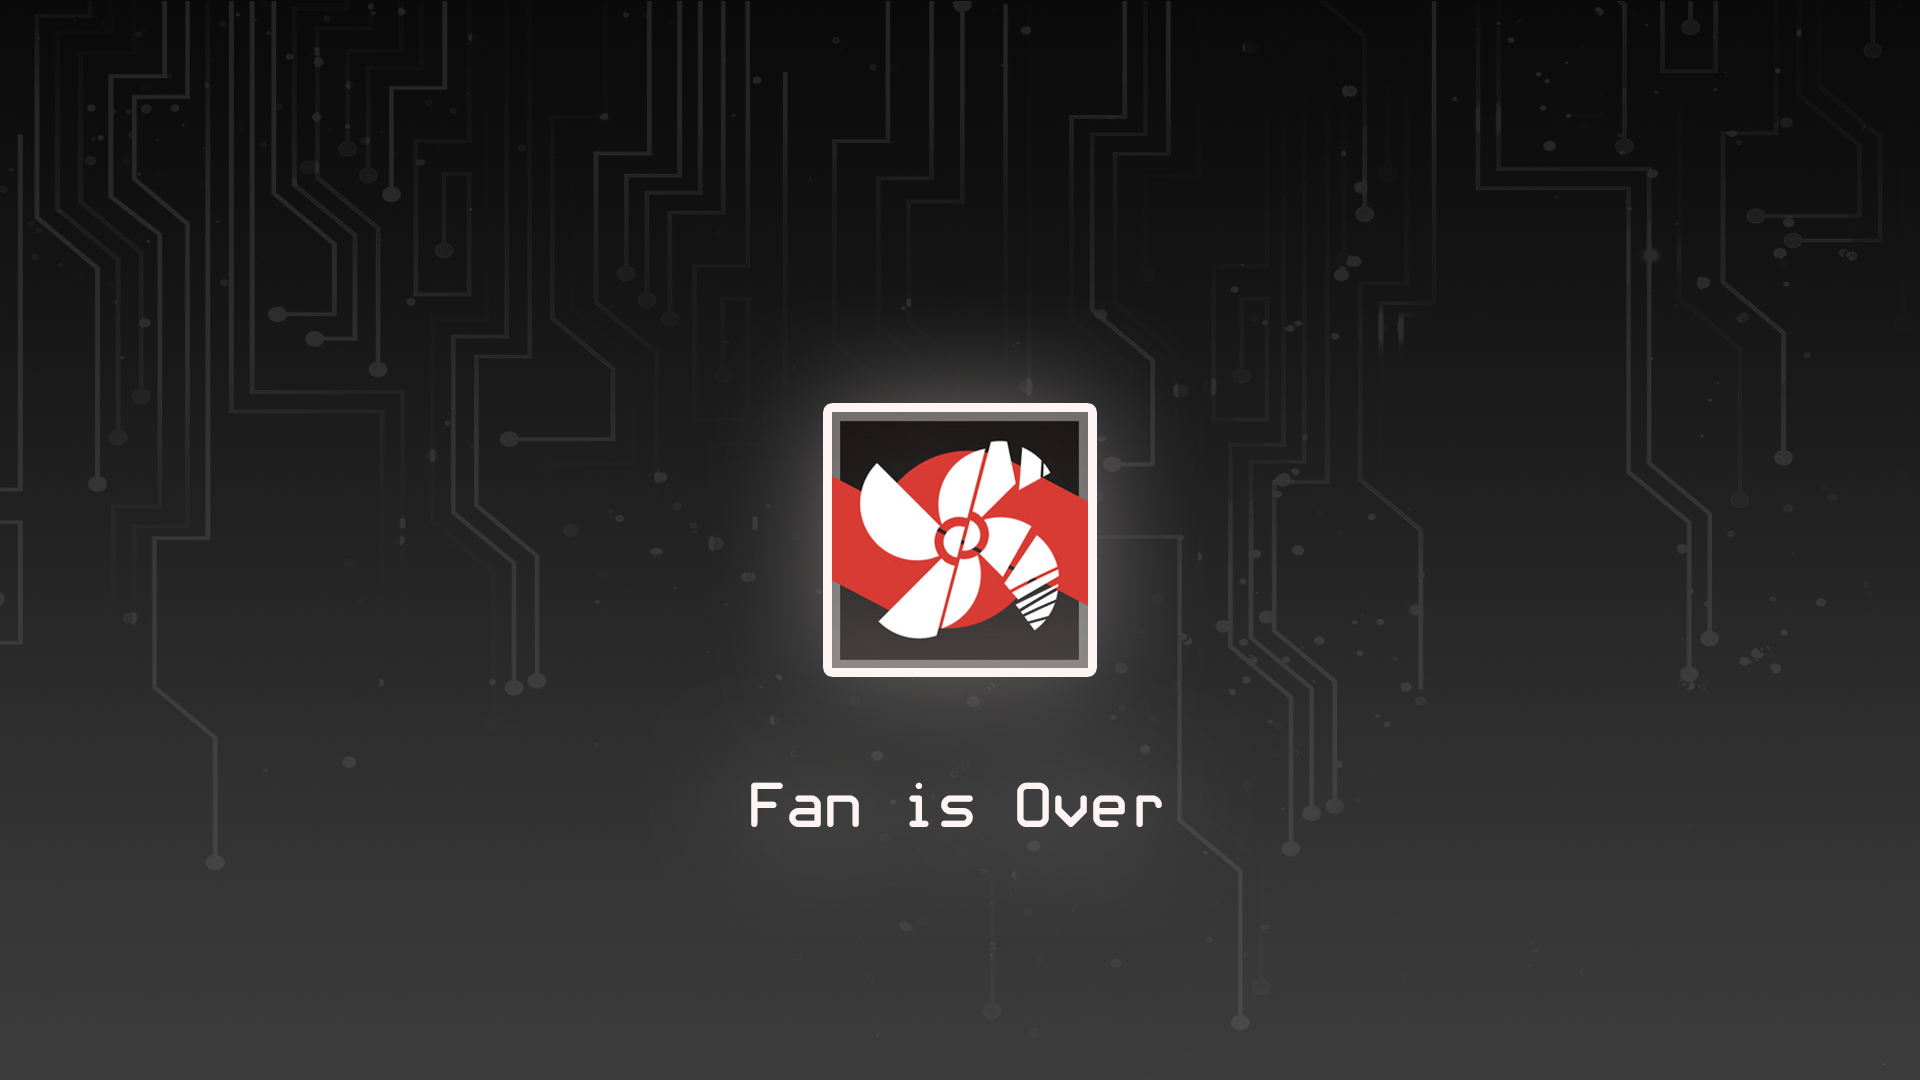 Fan is over